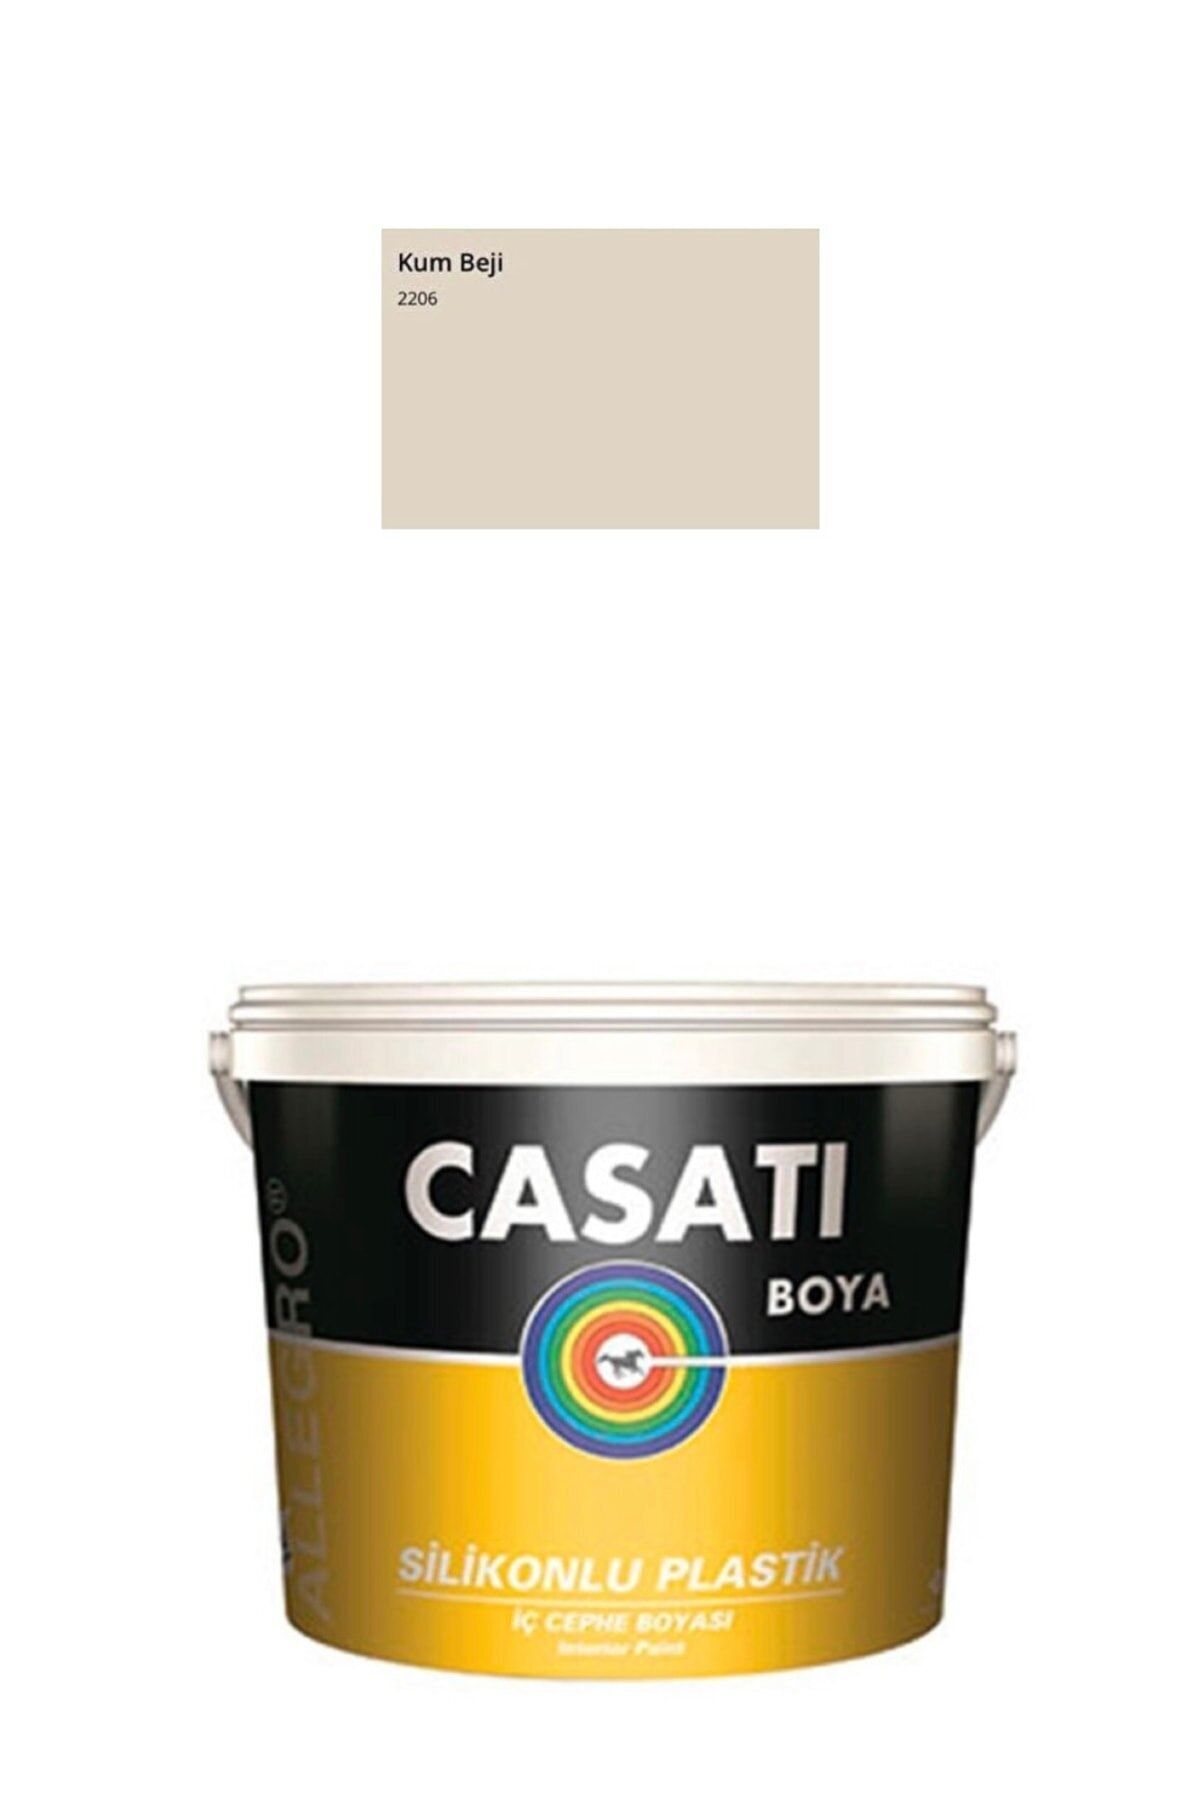 Casati Allegro Silikonlu Plastik Iç Cephe Duvar Boyası 3,5 Kg Kum Beji